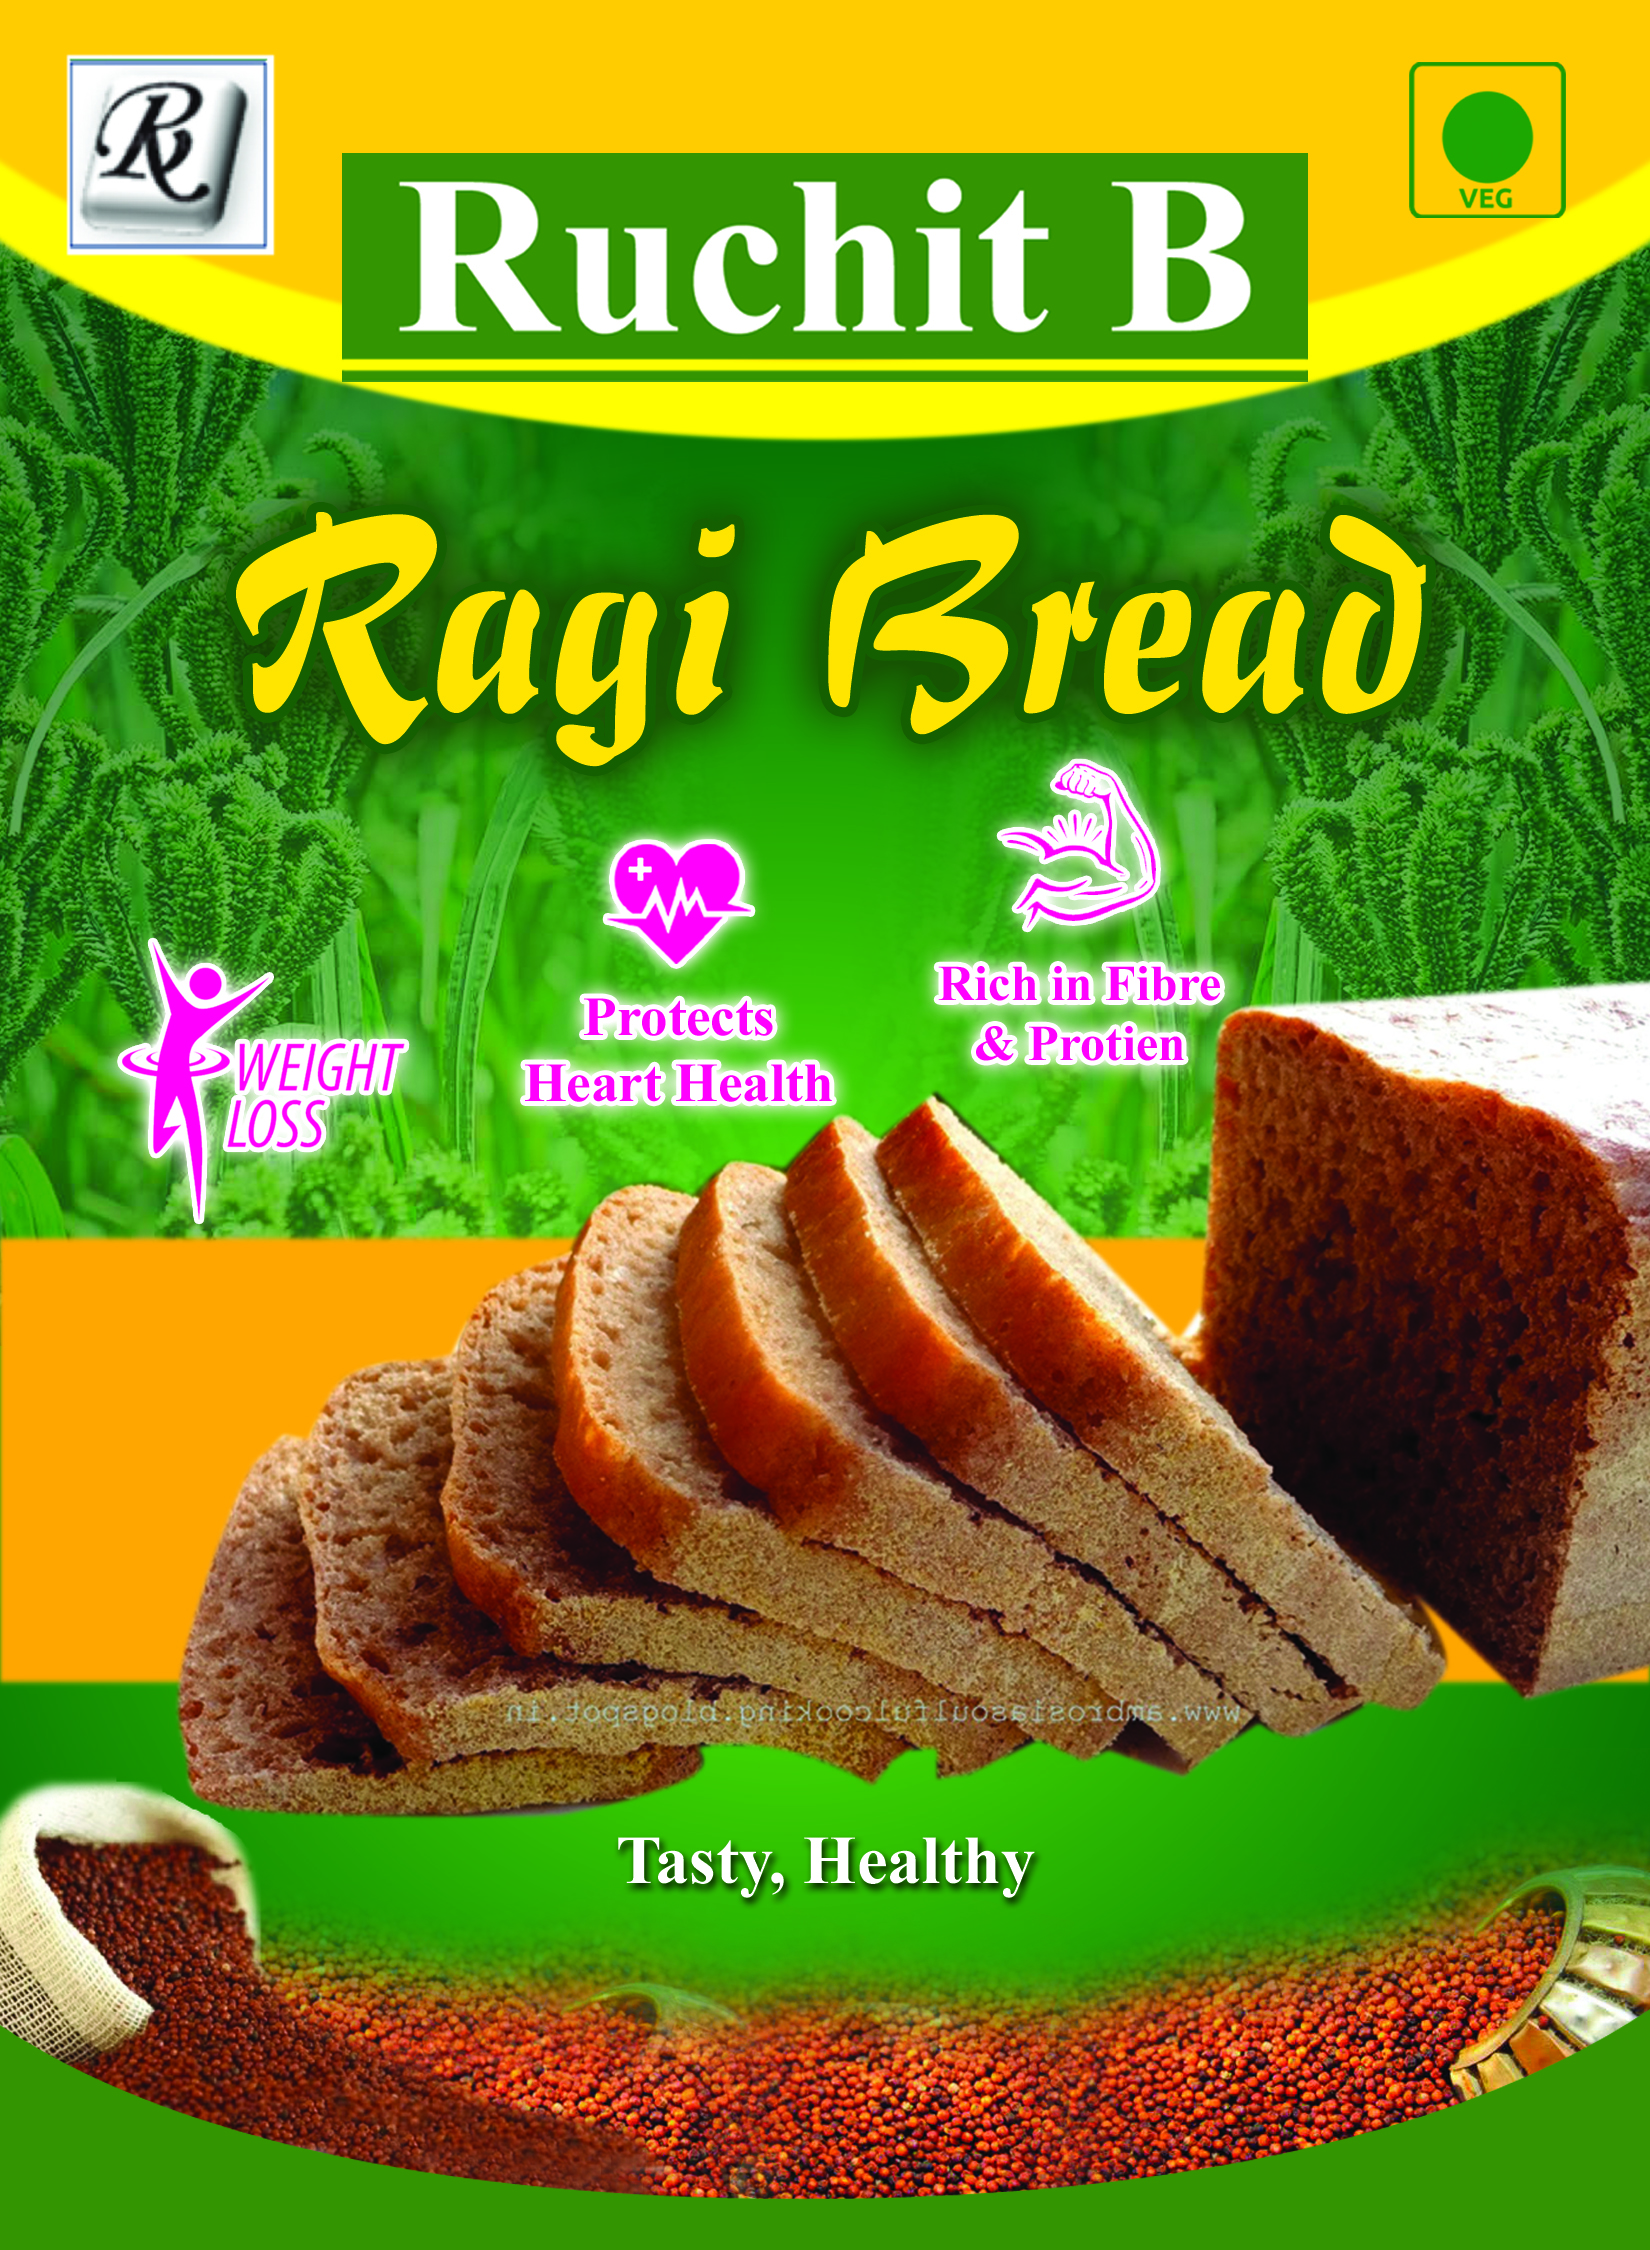 Raagi Bread